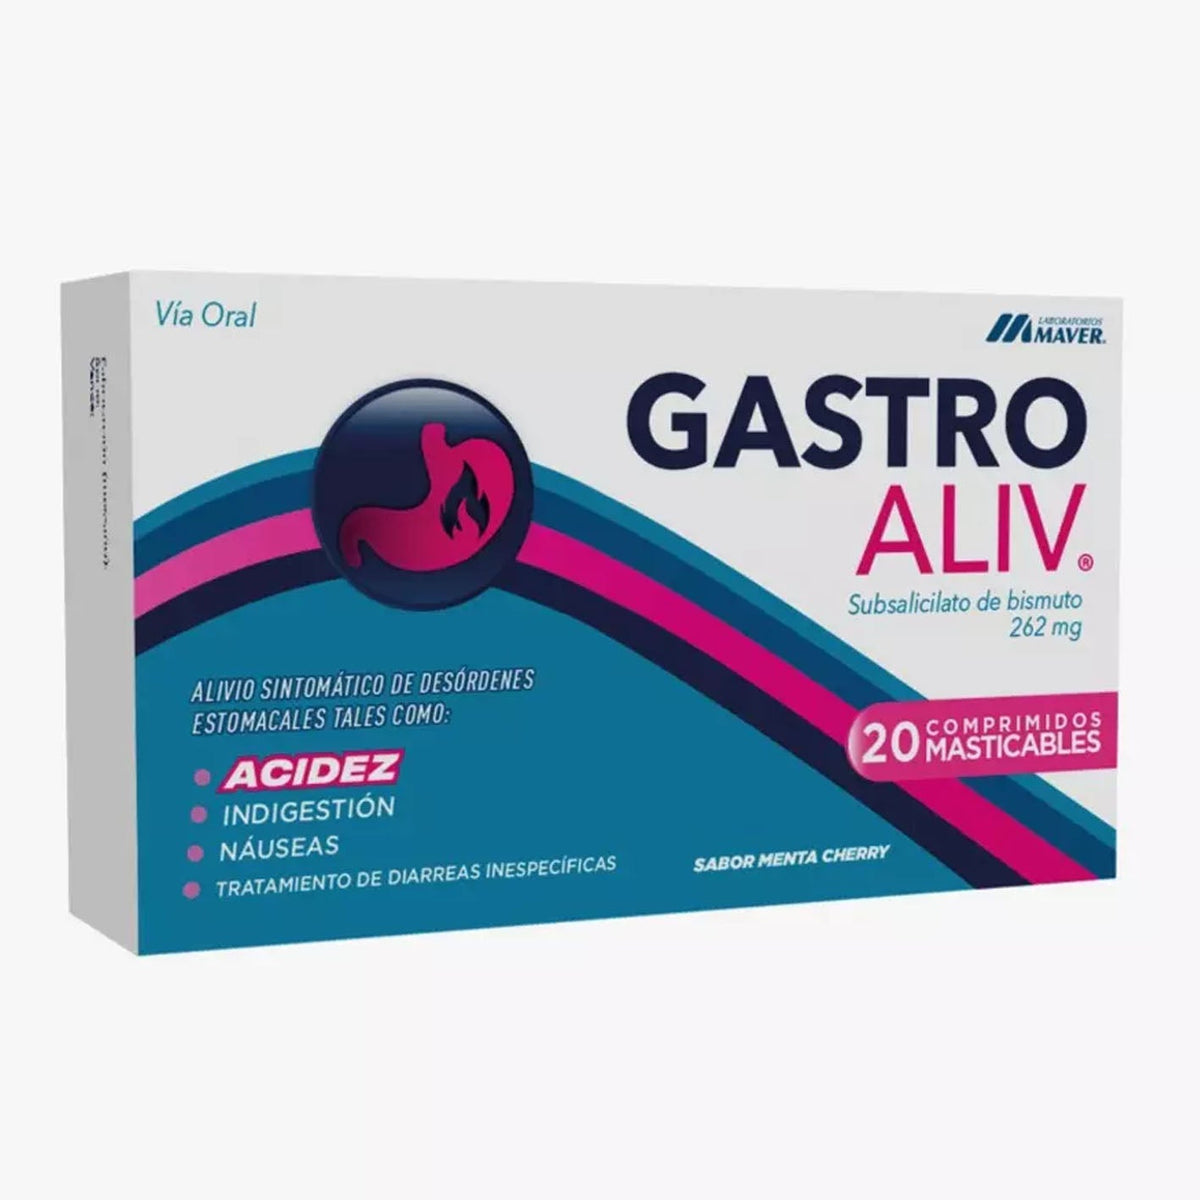 Gastroaliv Comprimidos Masticables PRONTO VENCIMIENTO